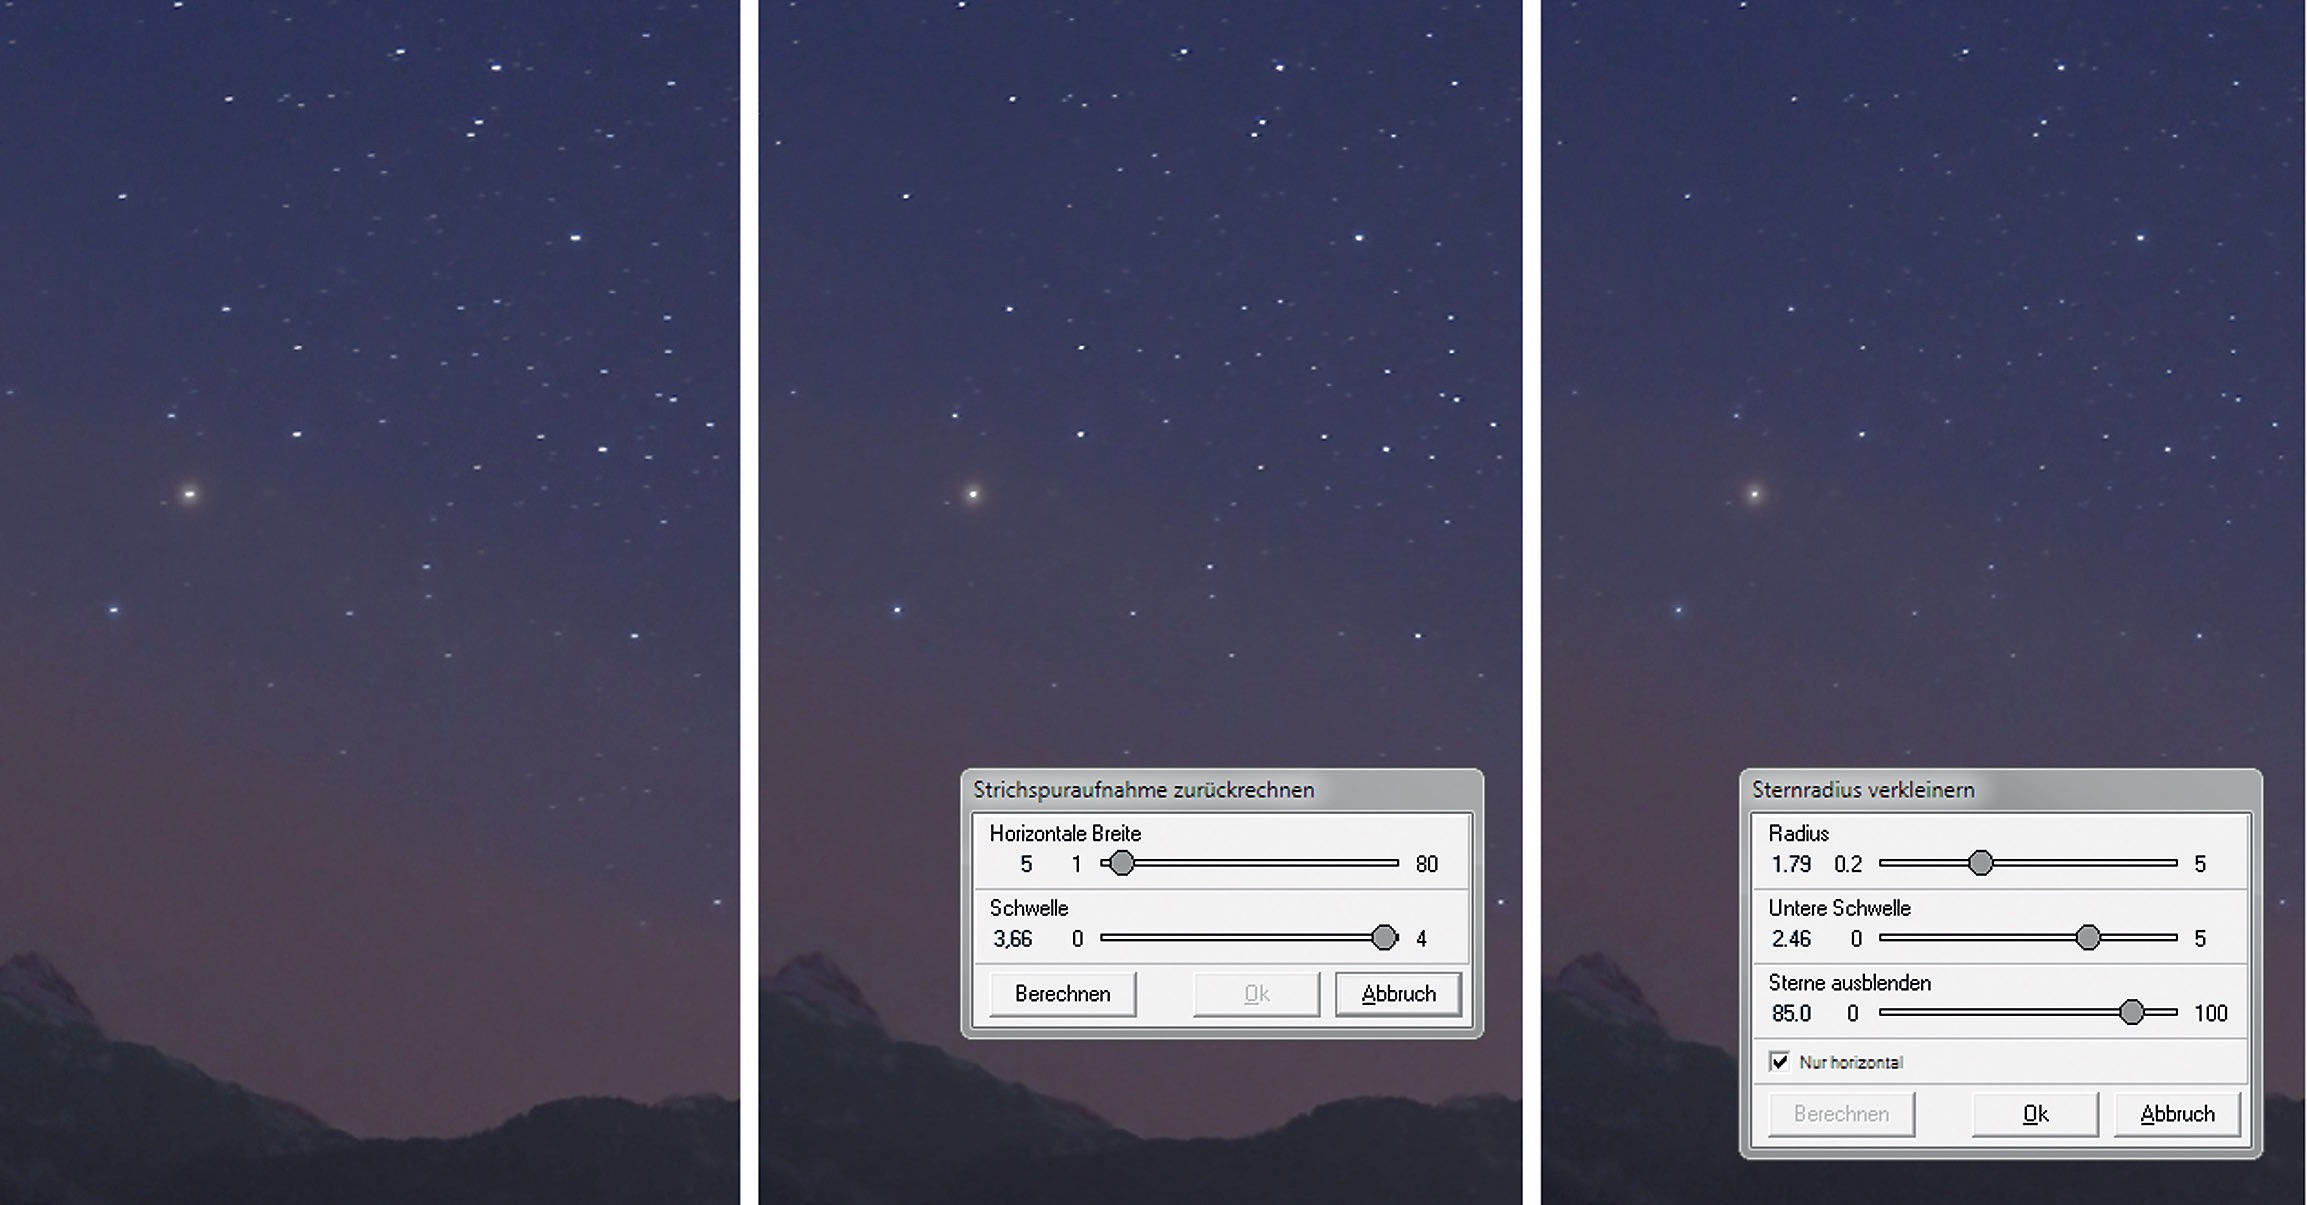 Zdjęcie gwiazdozbioru Skorpiona nad Alpami (po lewej). Na zmniejszonym zdjęciu wciąż wyraźnie widać zniekształcone gwiazdy. Zdjęcie na środku pokazuje efekt funkcji "Przekalkulowanie śladów" z wybranymi ustawieniami. Po prawej widać ustawienia i wynik funkcji "Zmniejsz gwiazdy". M.Weigand